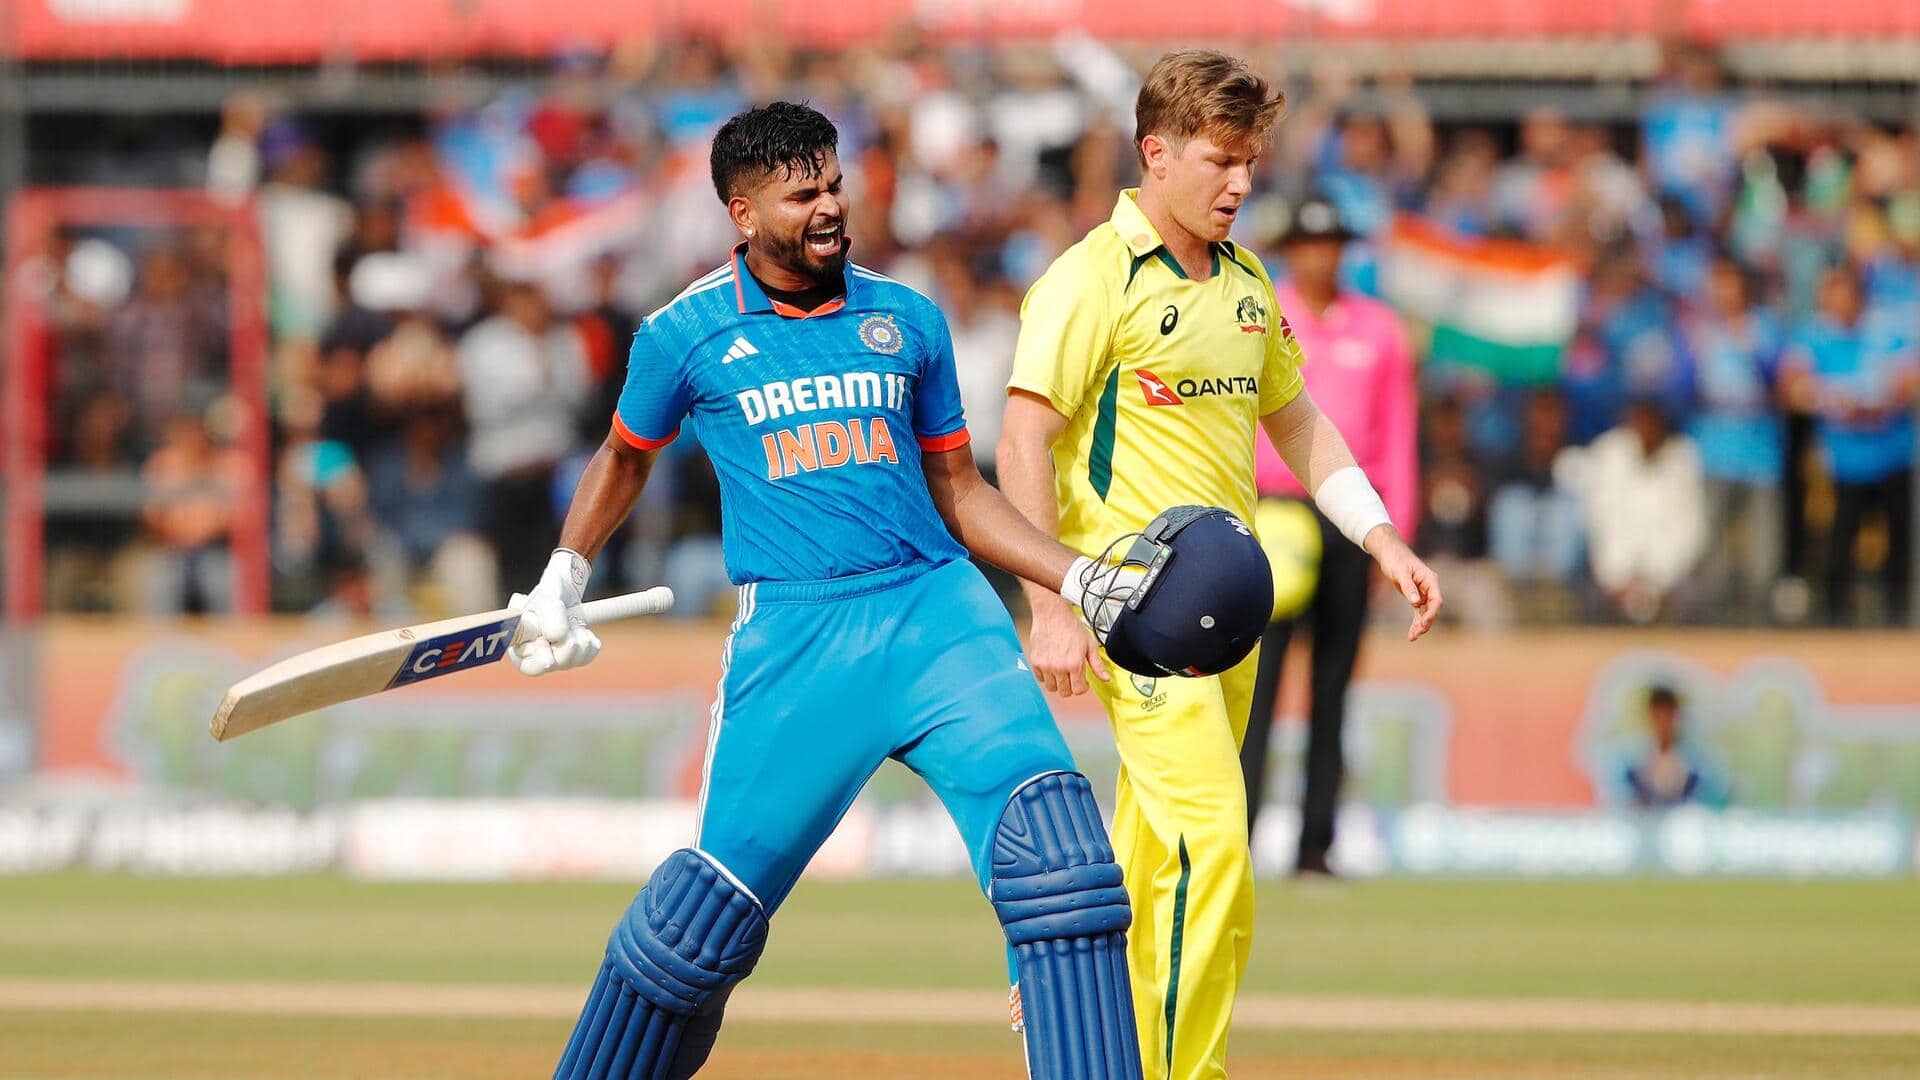 भारत ने ऑस्ट्रेलिया के खिलाफ बनाया अपना सबसे बड़ा स्कोर, दिया 400 रन का लक्ष्य